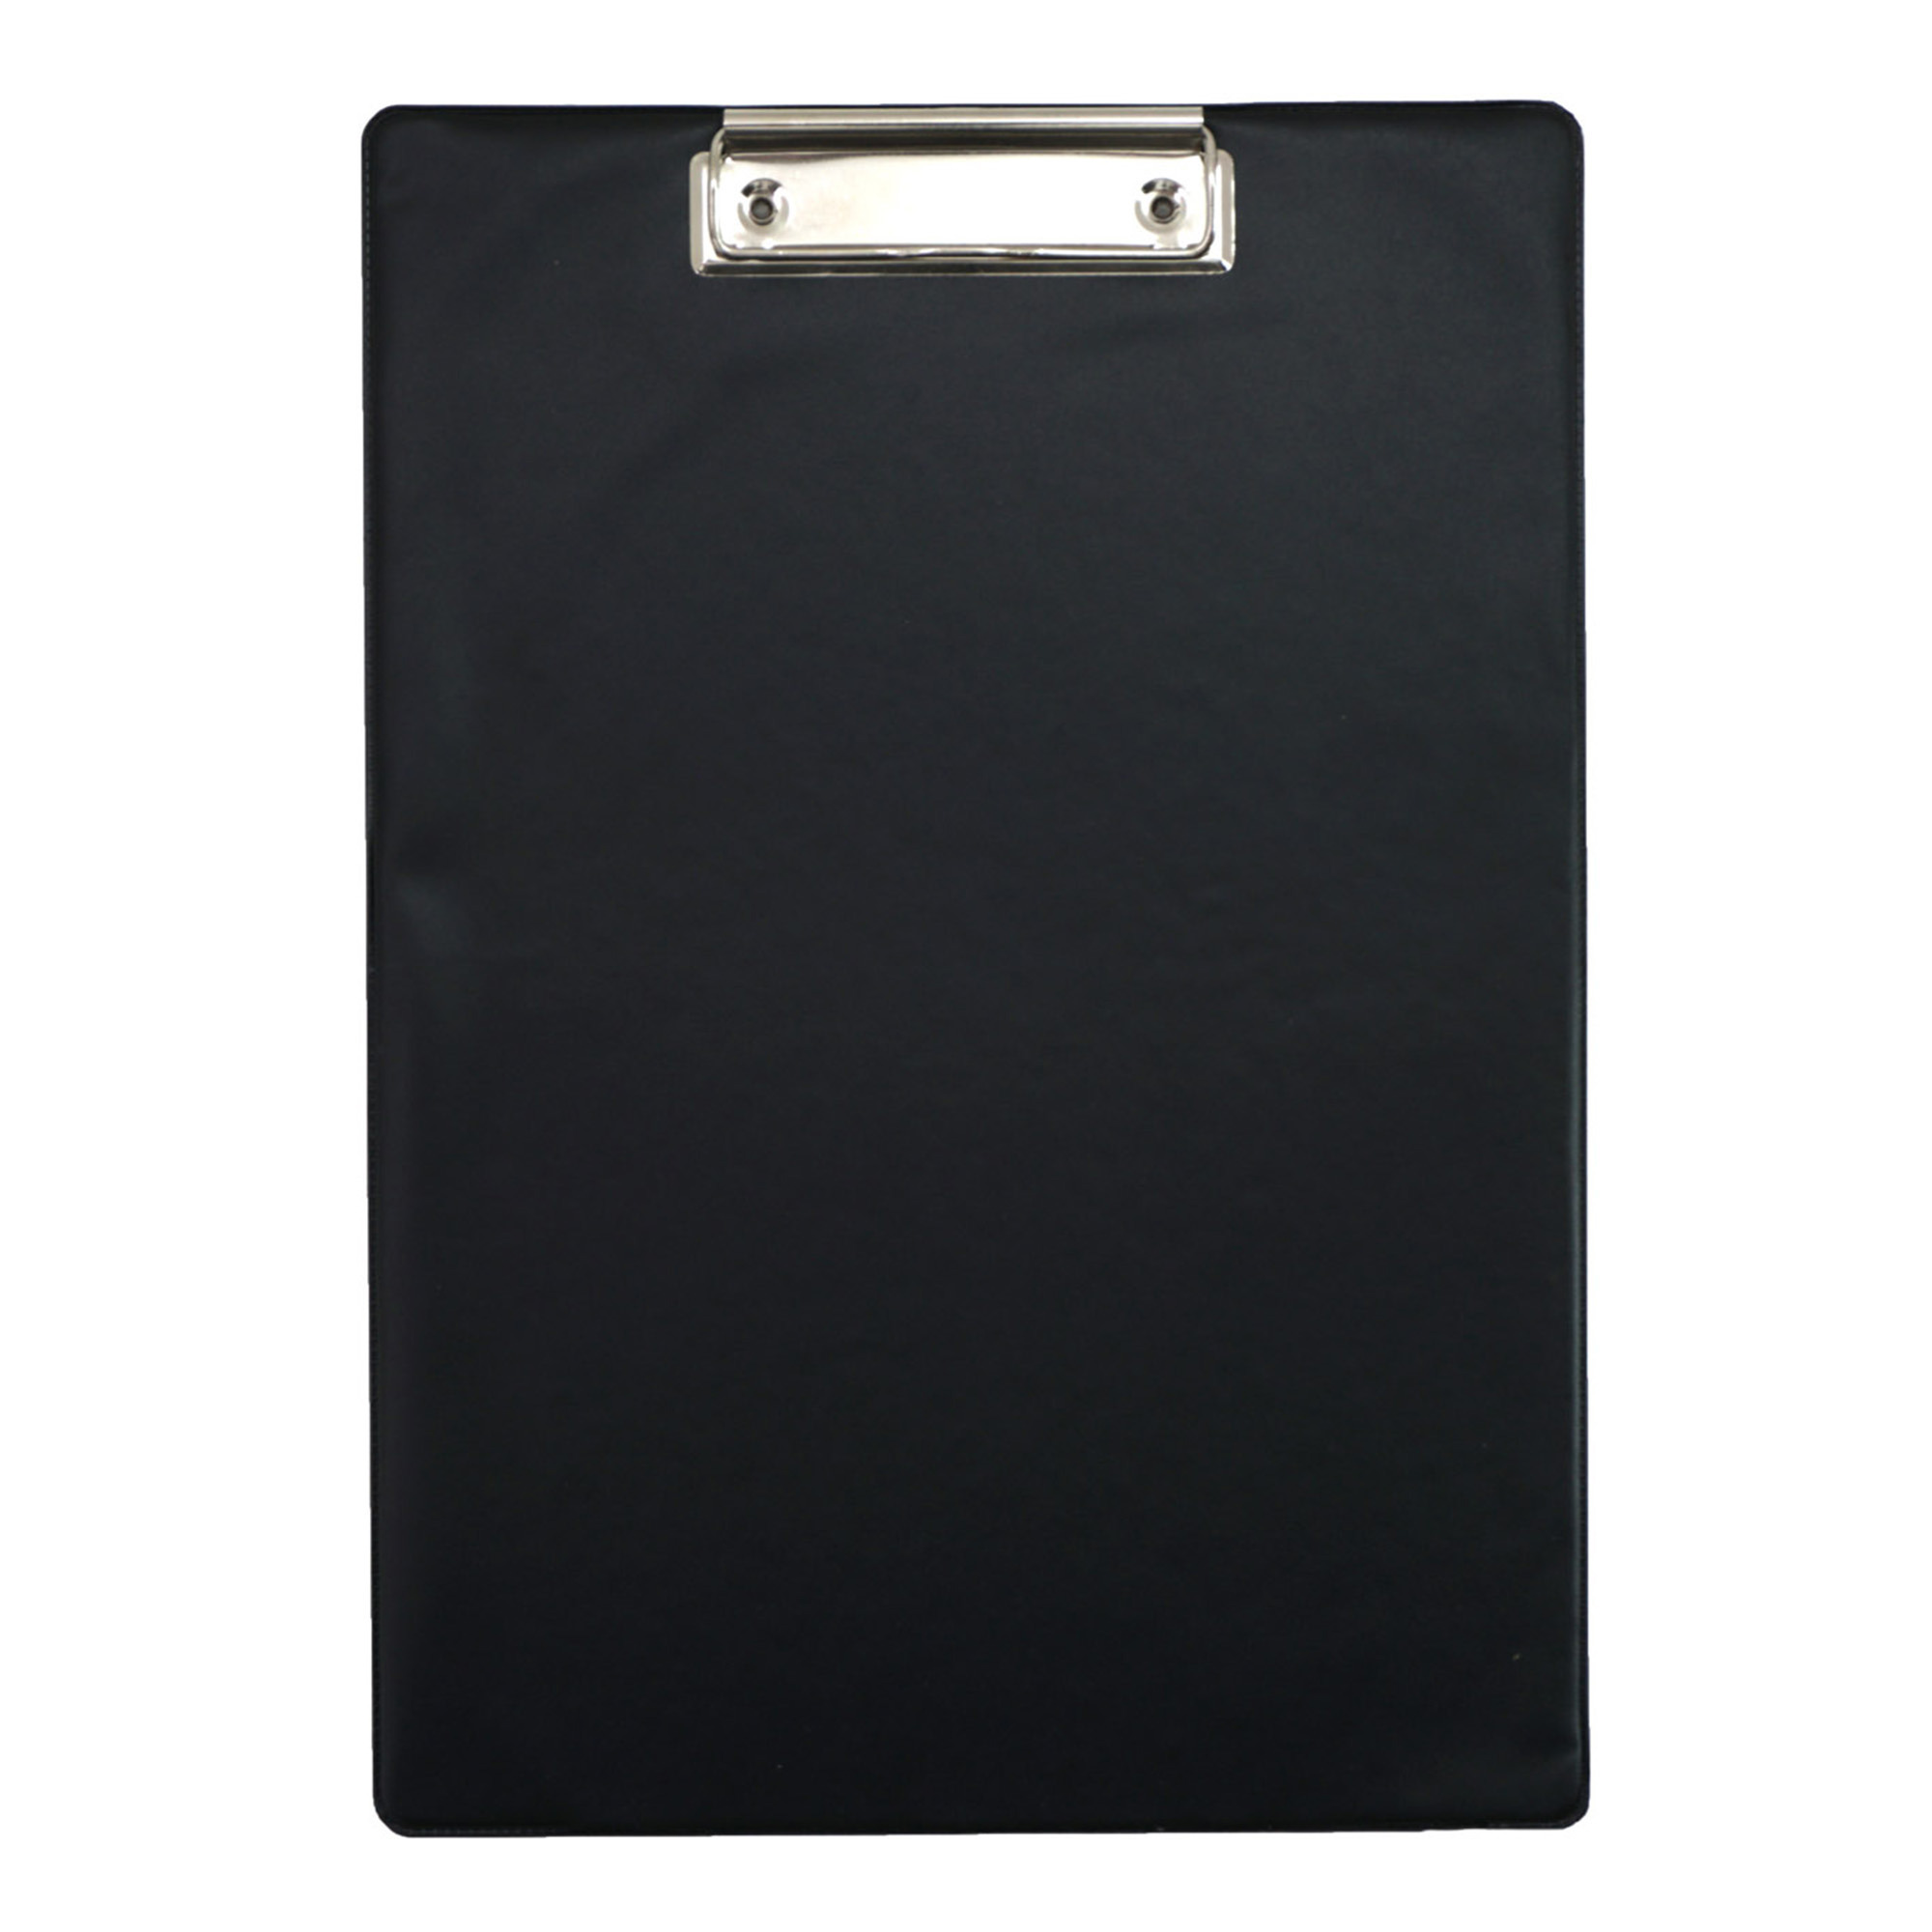 Clipboard-klembord-memobord voor documenten zwart A4 formaat kunststof